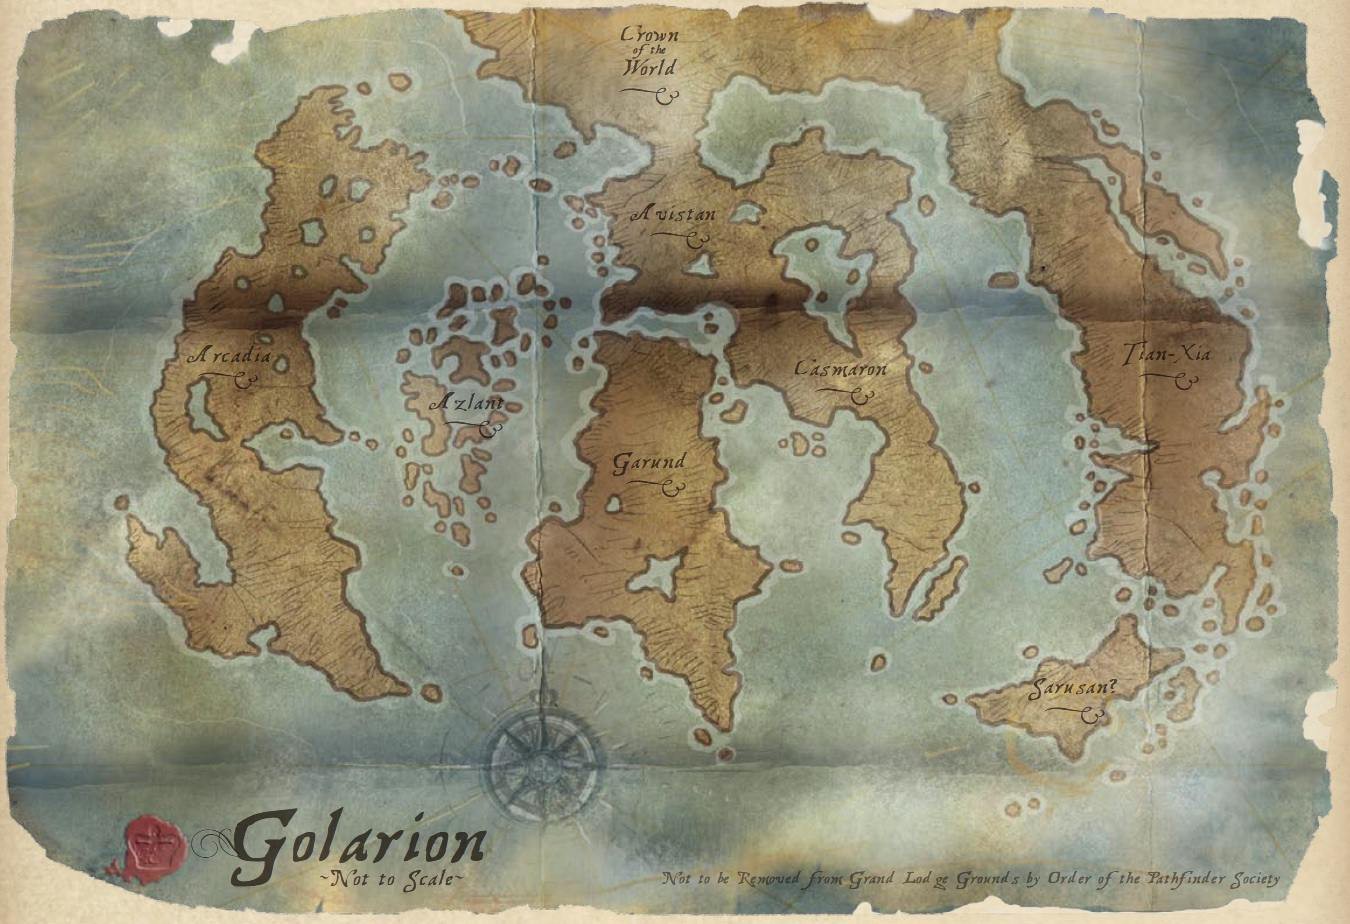 golarion-map